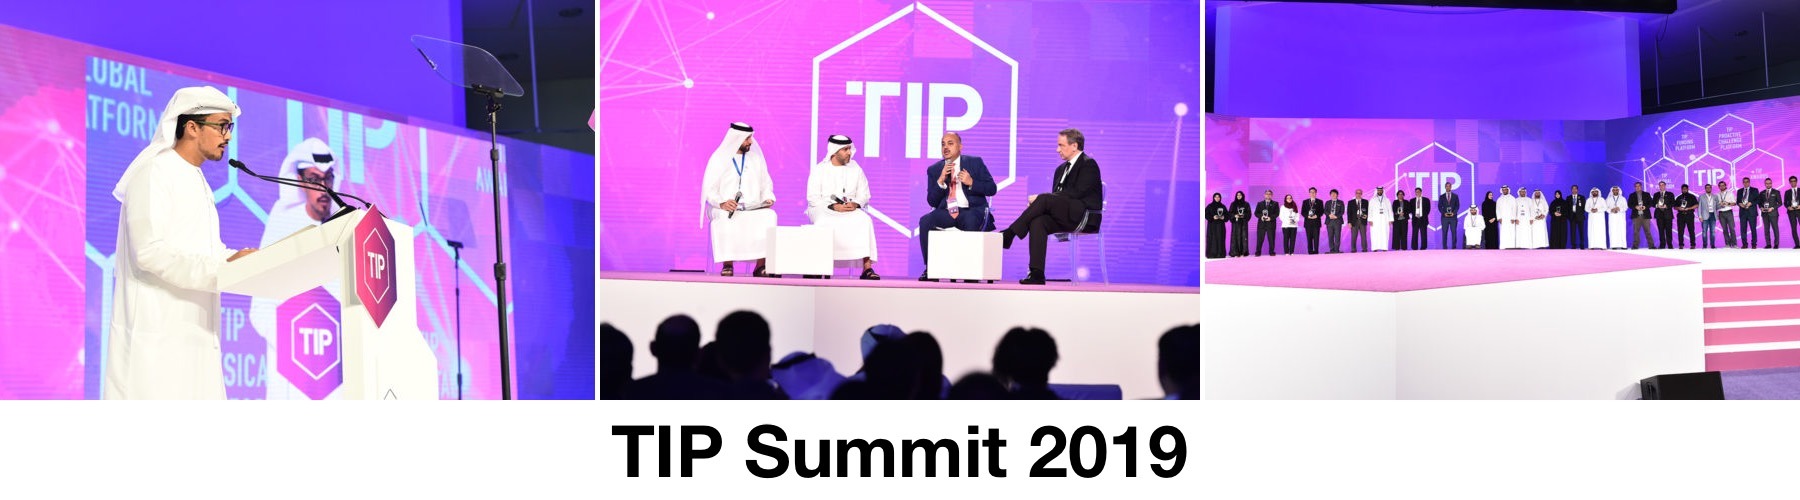 TIP Summit 2019 - Coming Soon in UAE